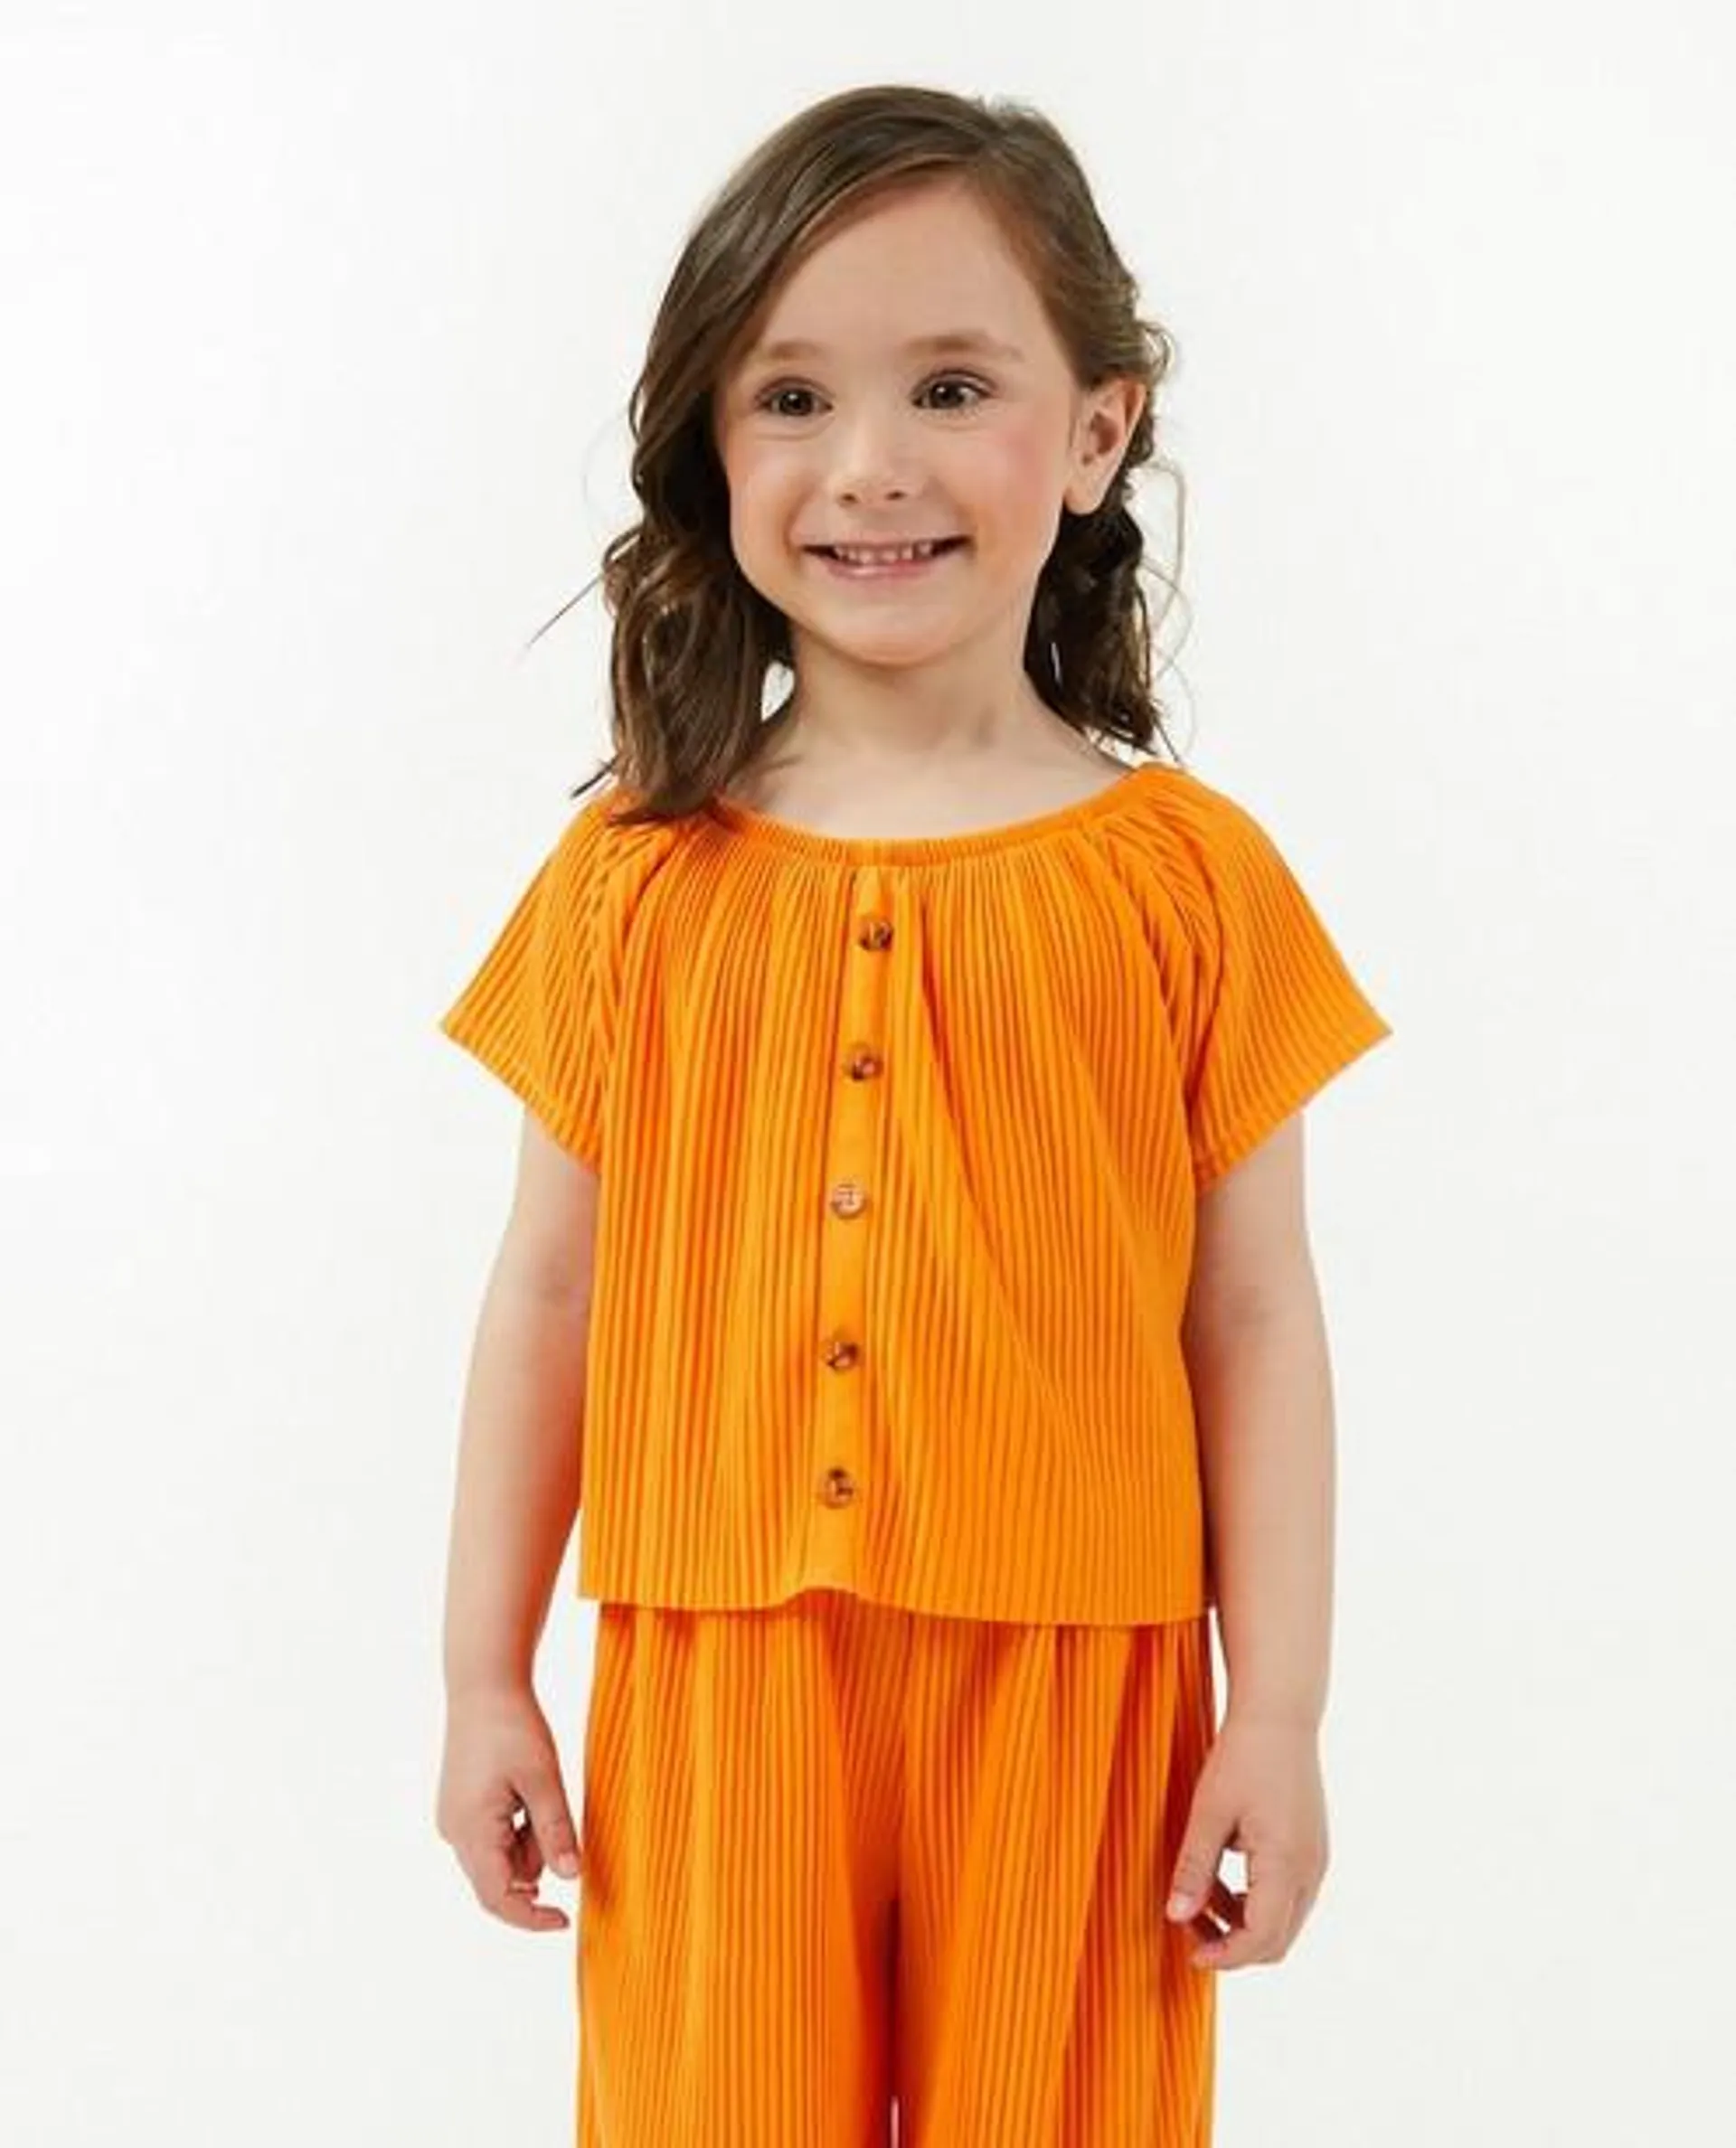 Oranje T-shirt met rib, 2-7 jaar